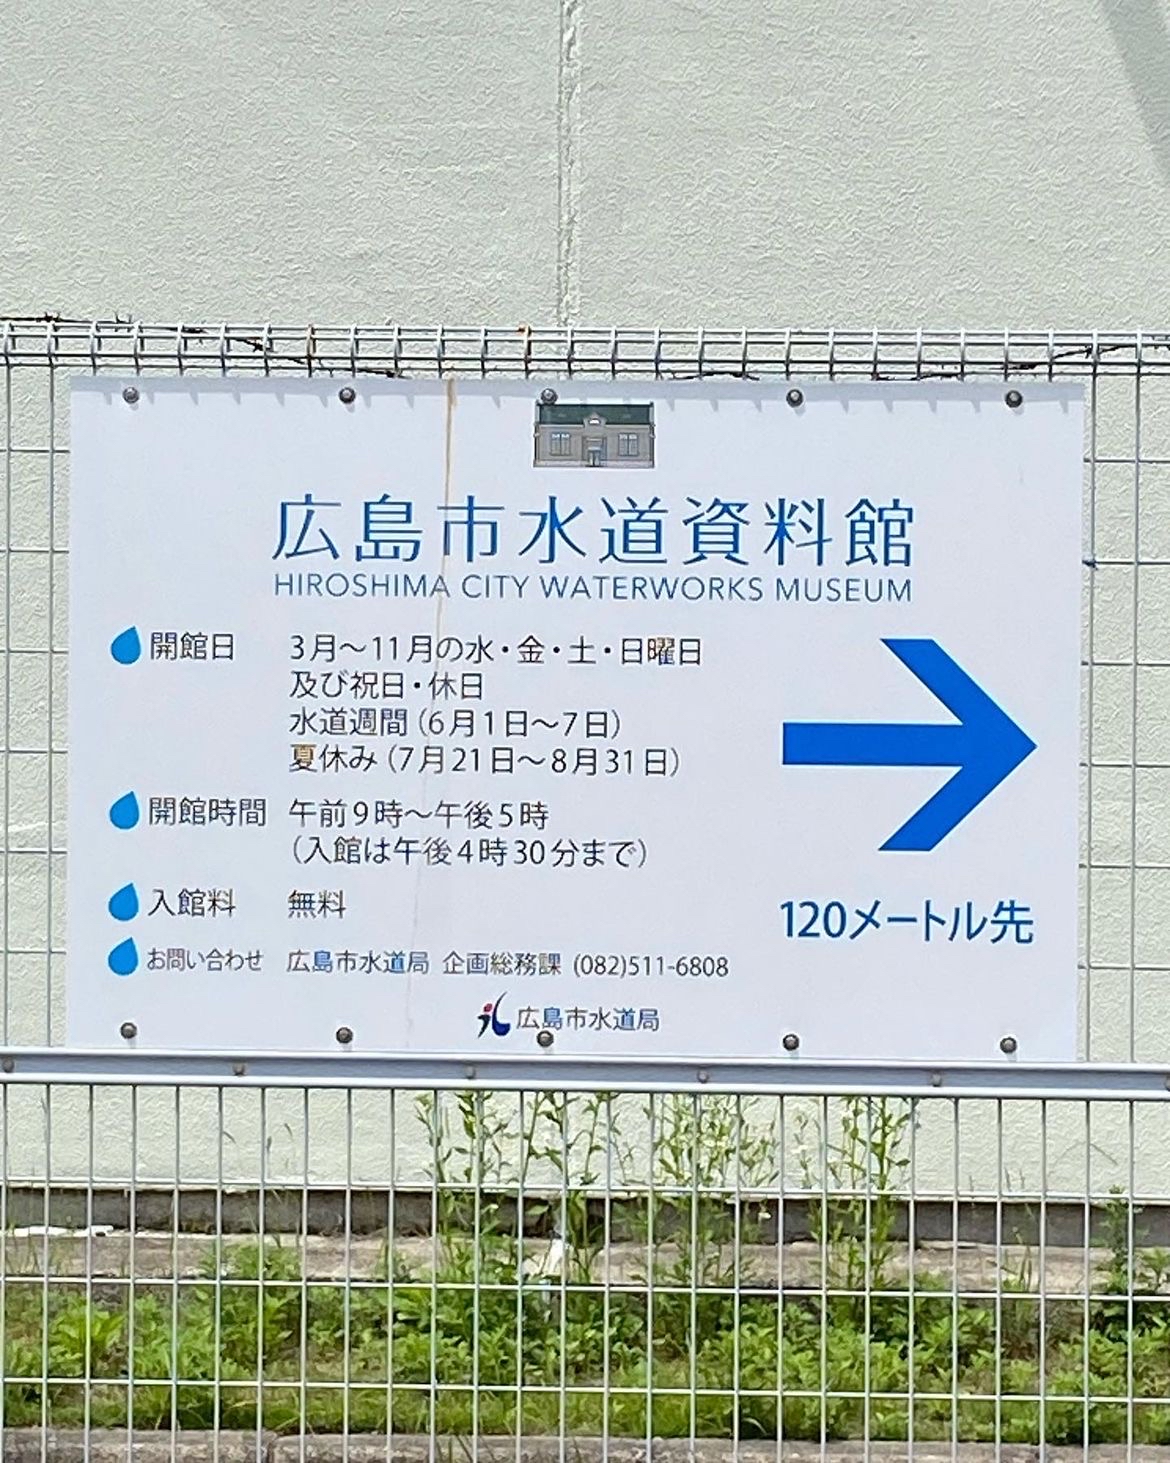 🏫【广岛市的历史学习地】广岛市水道资料馆🚰 - 深入了解城市水源的博物馆📚  广岛市水道资料馆是一个